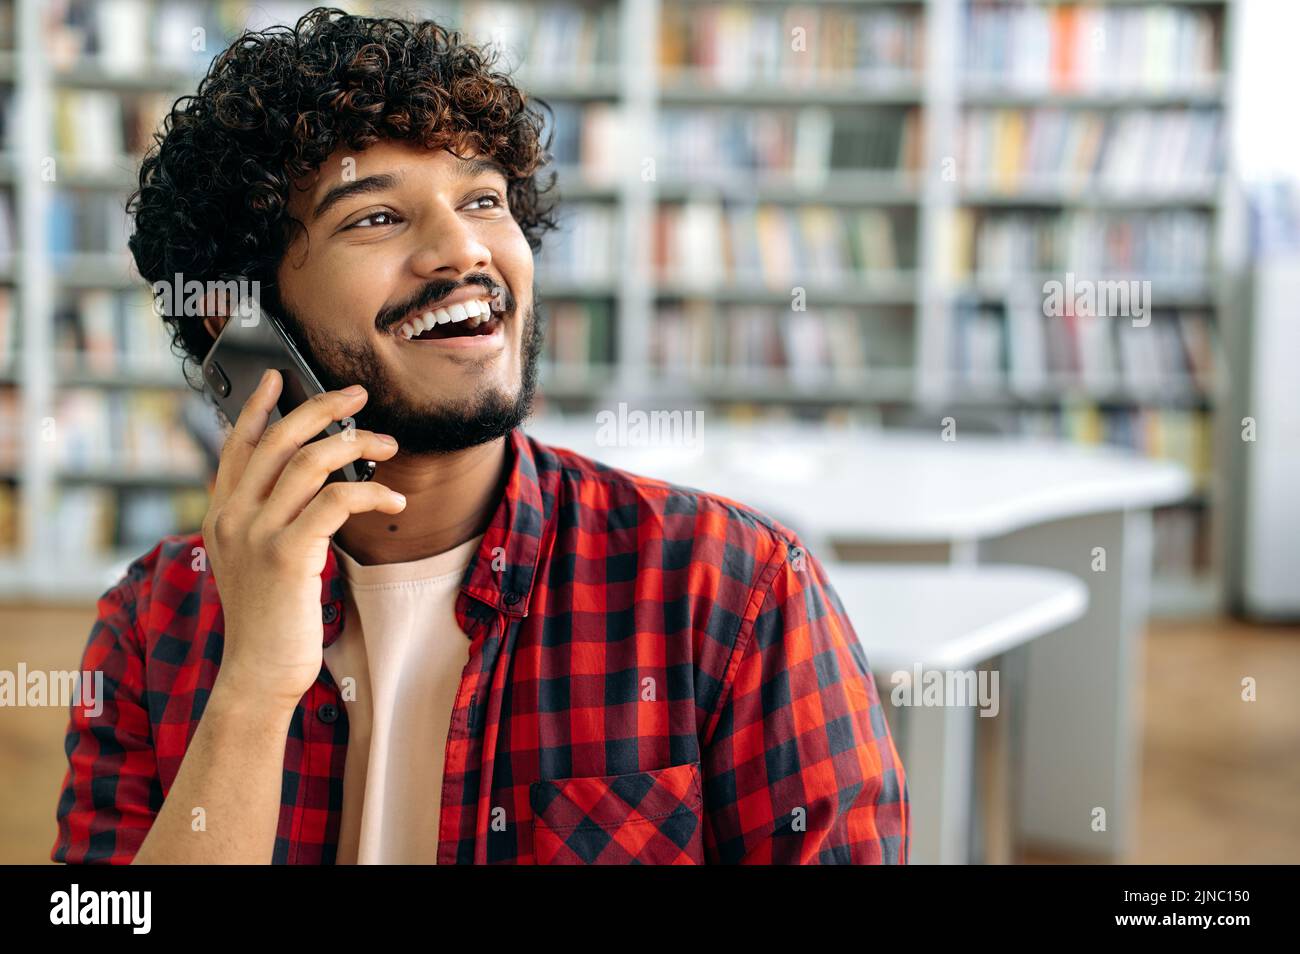 Conversation téléphonique. Gros plan d'un homme heureux aux cheveux bouclés et aux cheveux d'un indien ou d'un arabe, qui a négocié avec un smartphone, s'entretient avec un ami ou un collègue, regarde loin, souriant et amical Banque D'Images